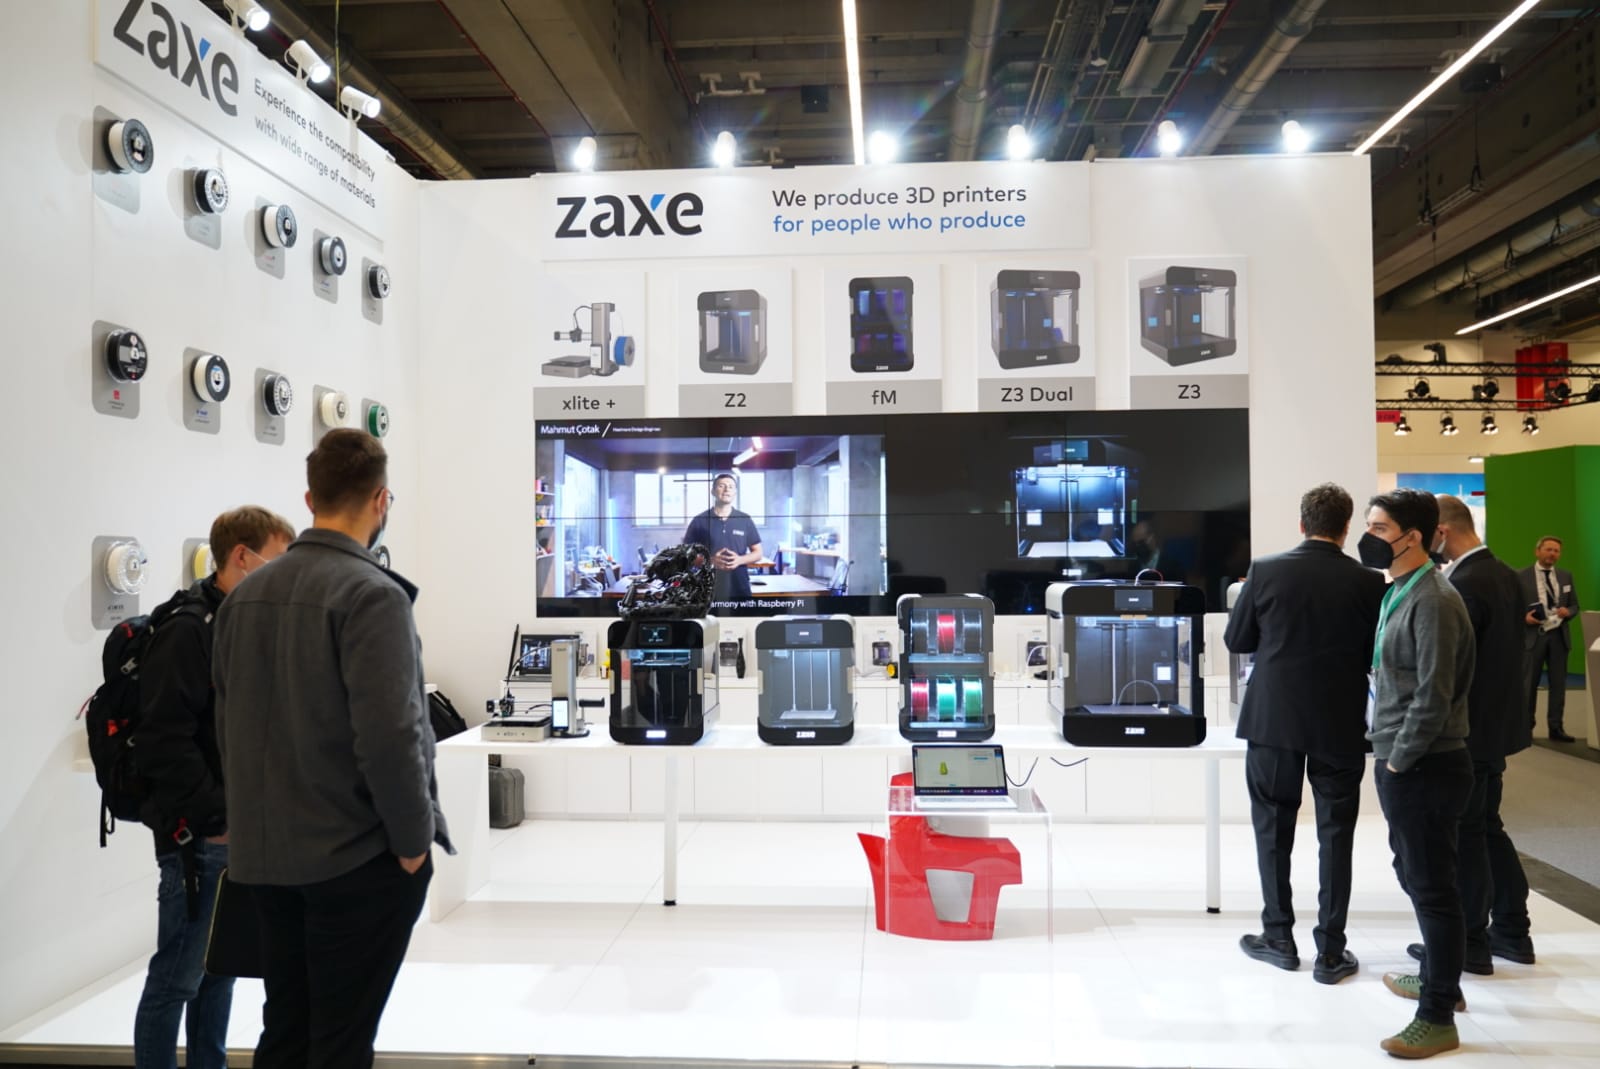 Zaxe's booth at Formnext 2021. Photo via Zaxe.